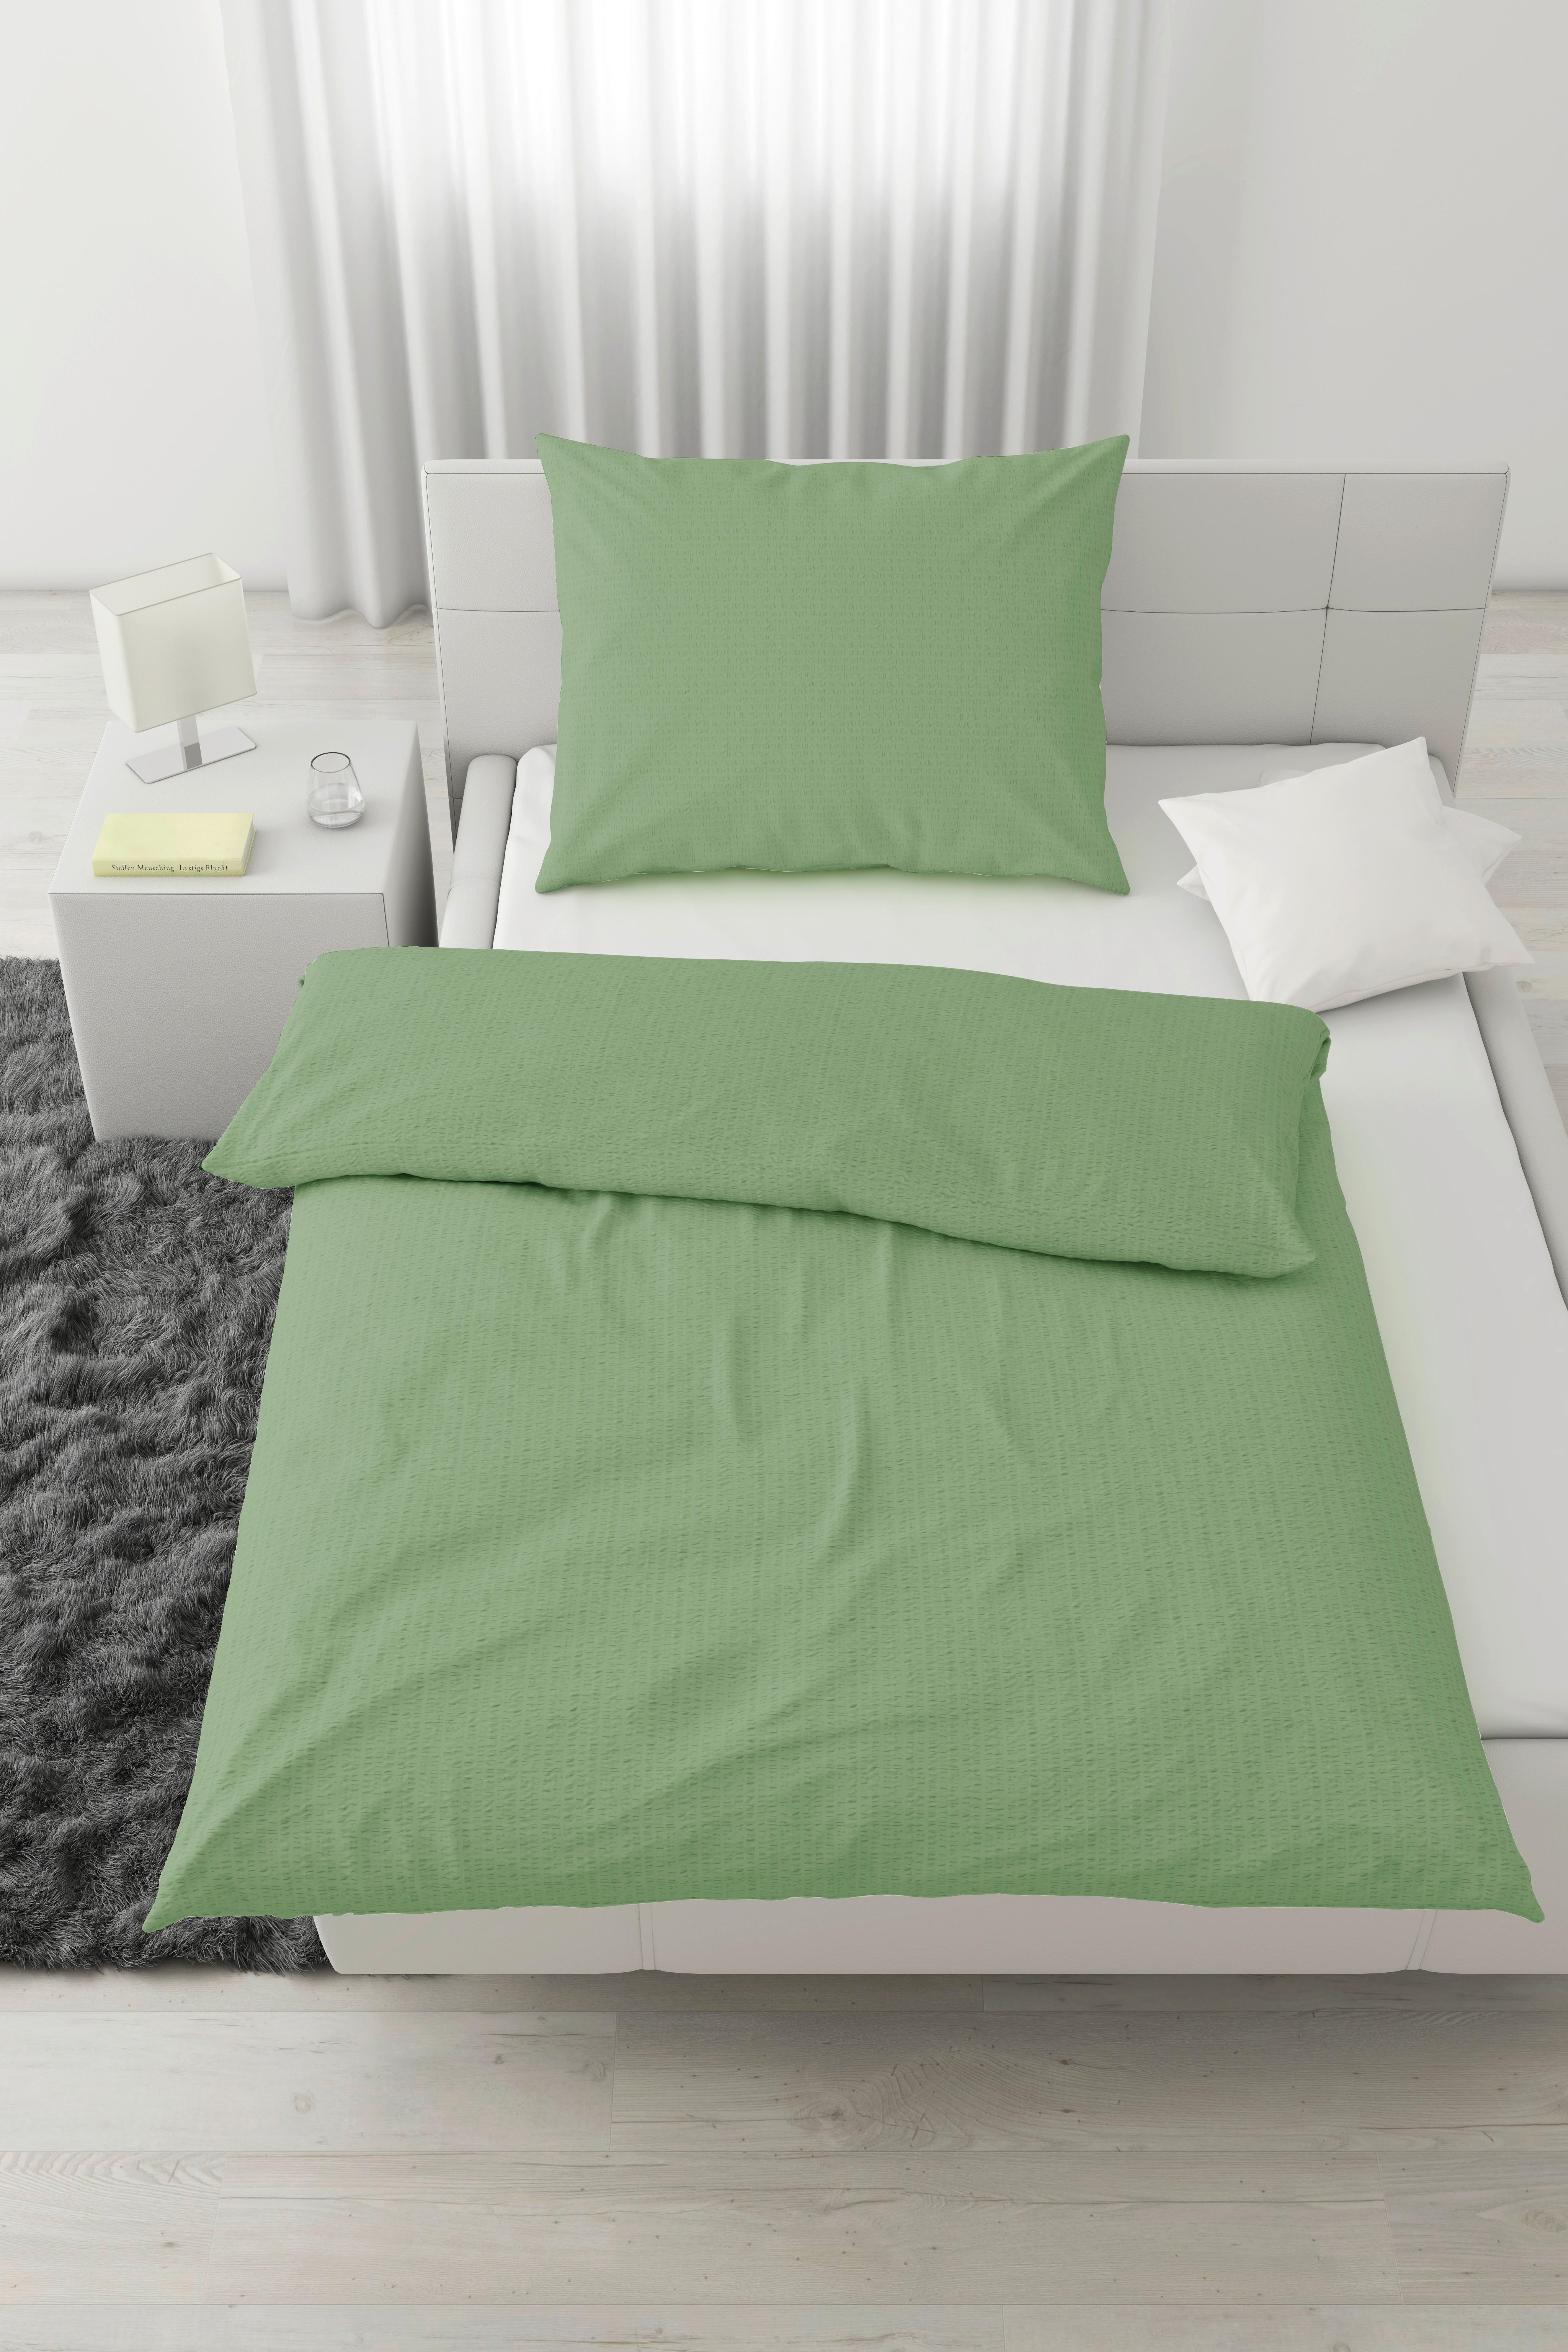 Povlečení Gisi, 140/200cm, Zelená - zelená, Konvenční, textil (140/200cm) - Modern Living